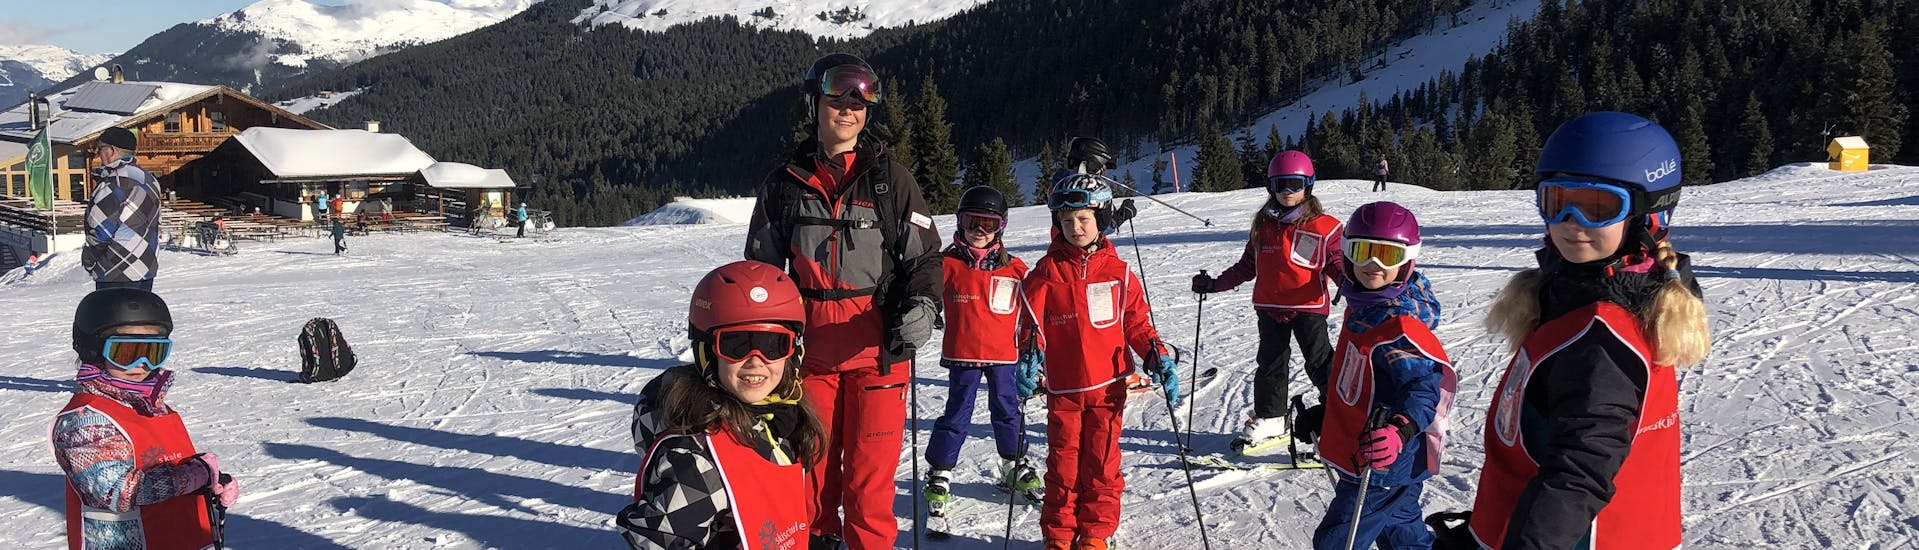 Een kleine jongen vermaakt zich tijdens de kinderskilessen (vanaf 6 jaar) - gevorderden terwijl hij zijn skivaardigheden verbetert onder toezicht van een ervaren skileraar van de skischool Skischule Arena in Zell am Ziller.